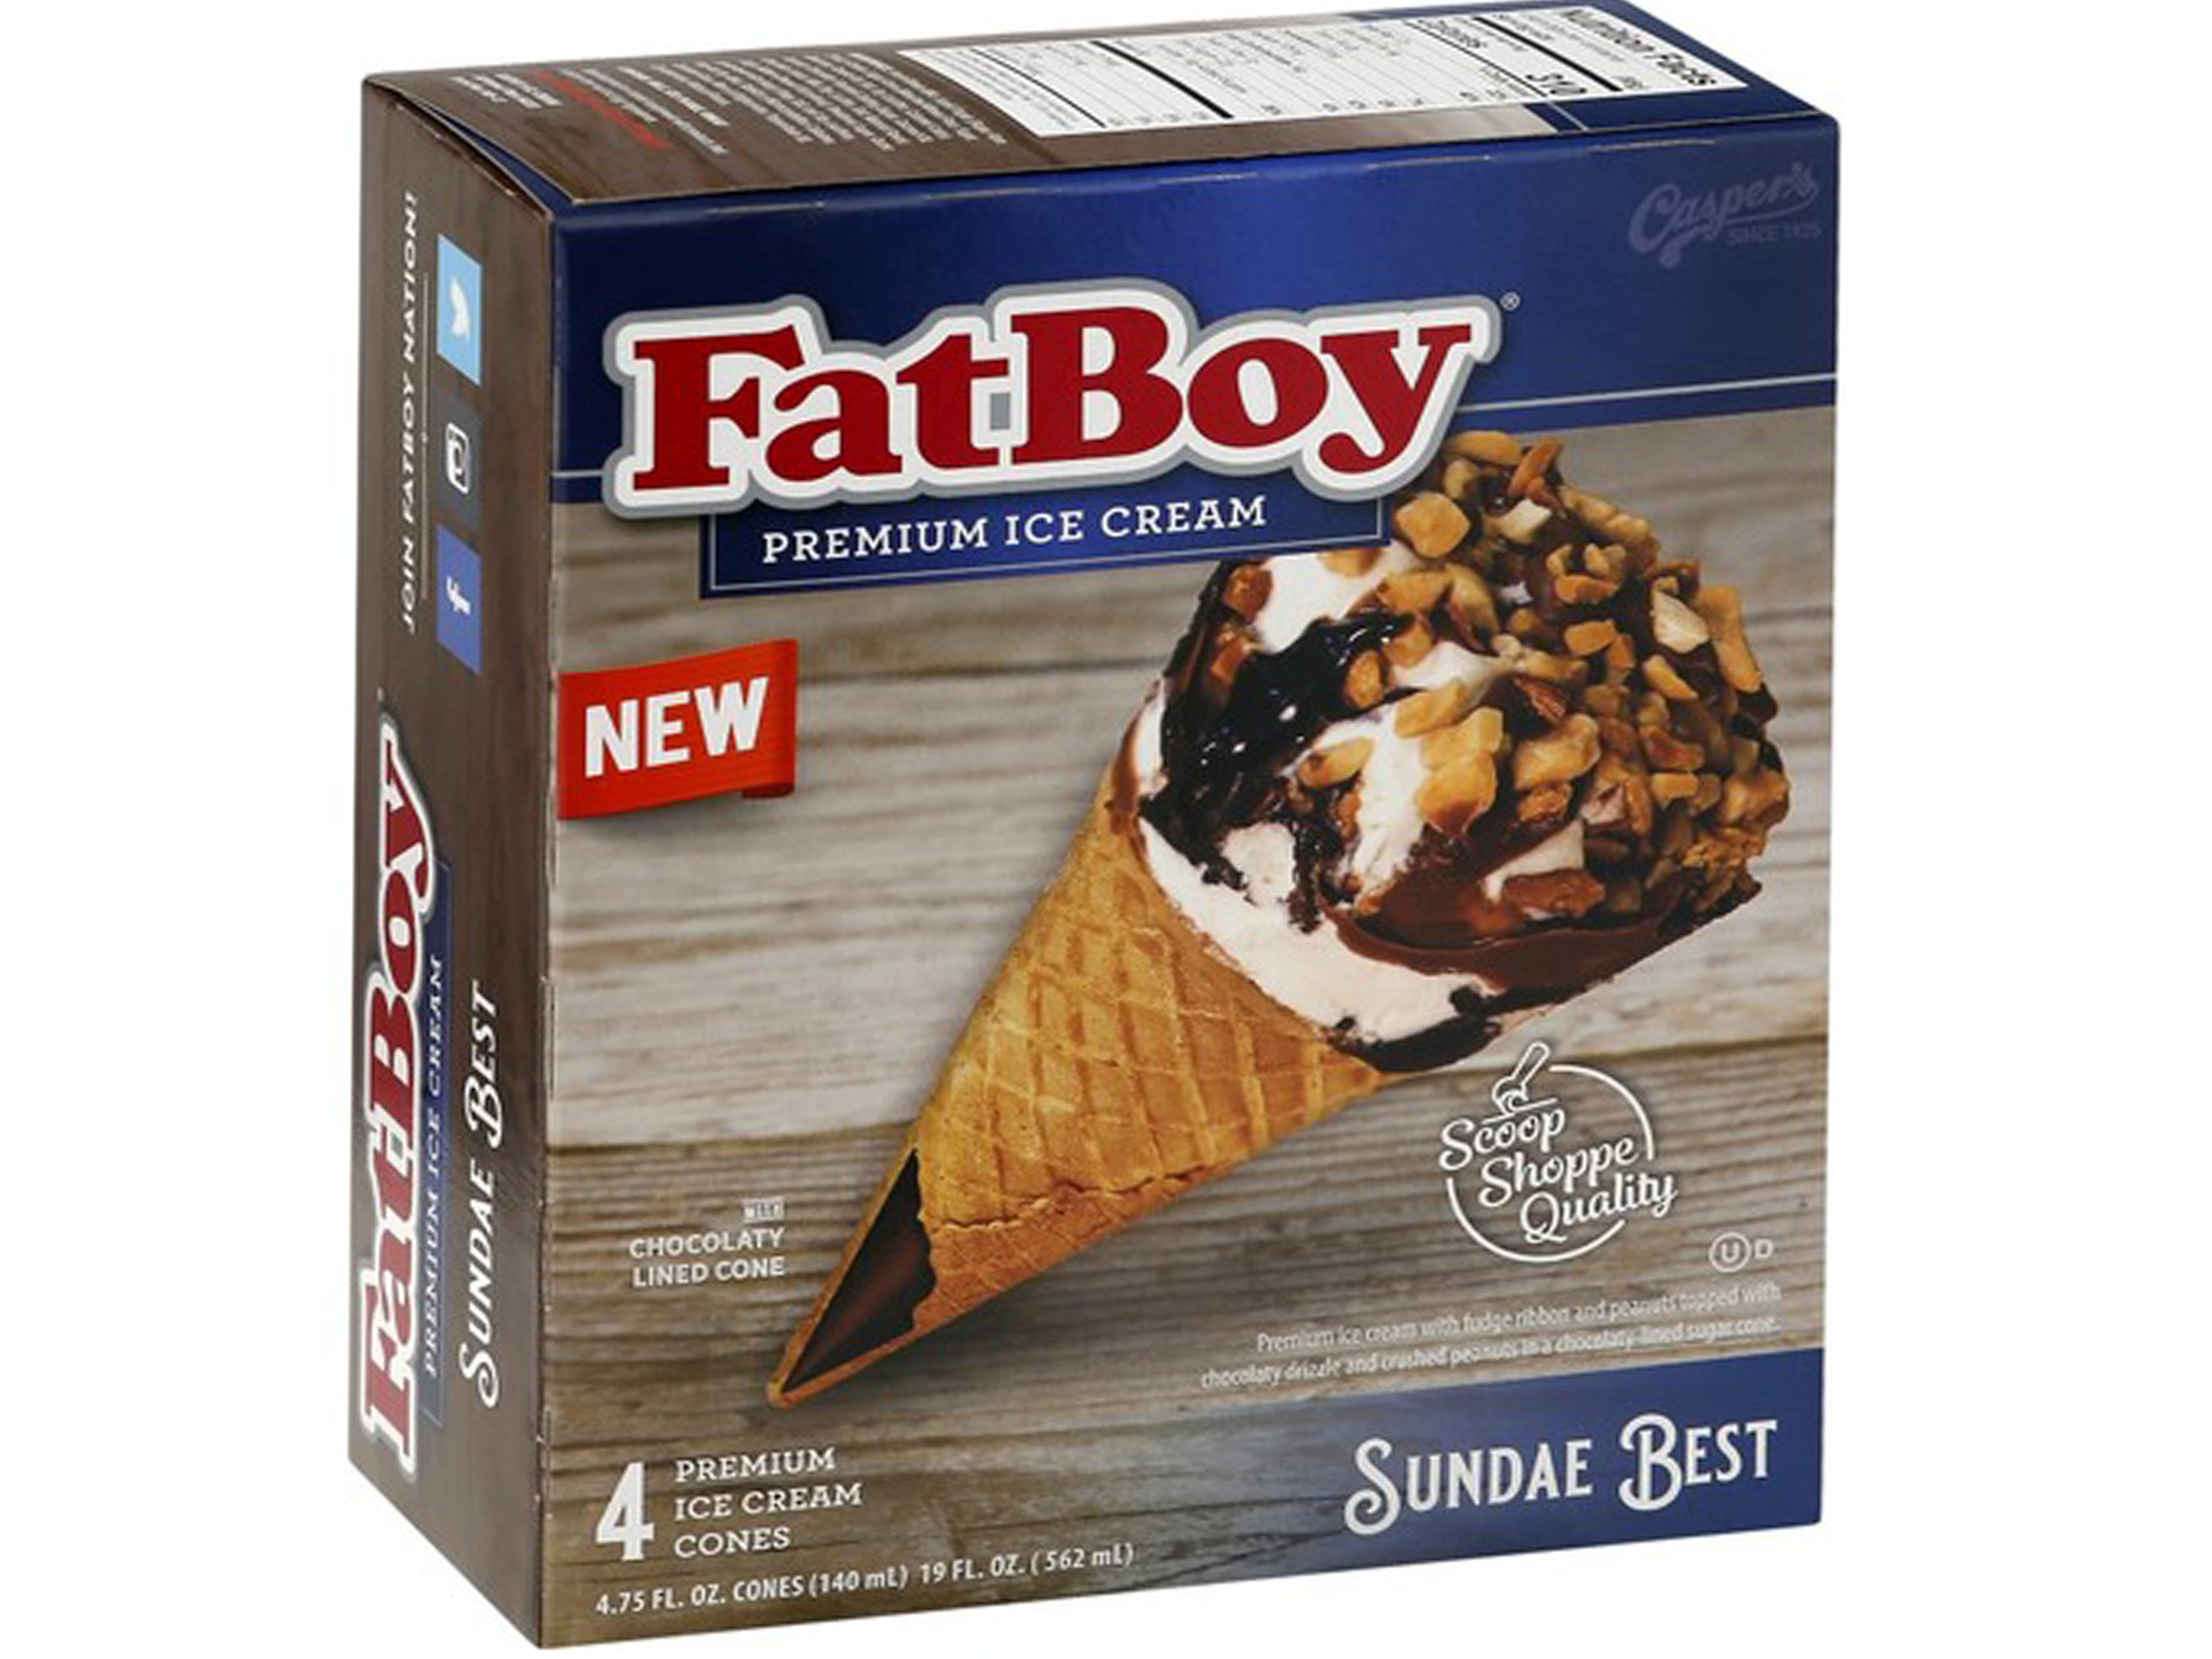 fatboy-sundae